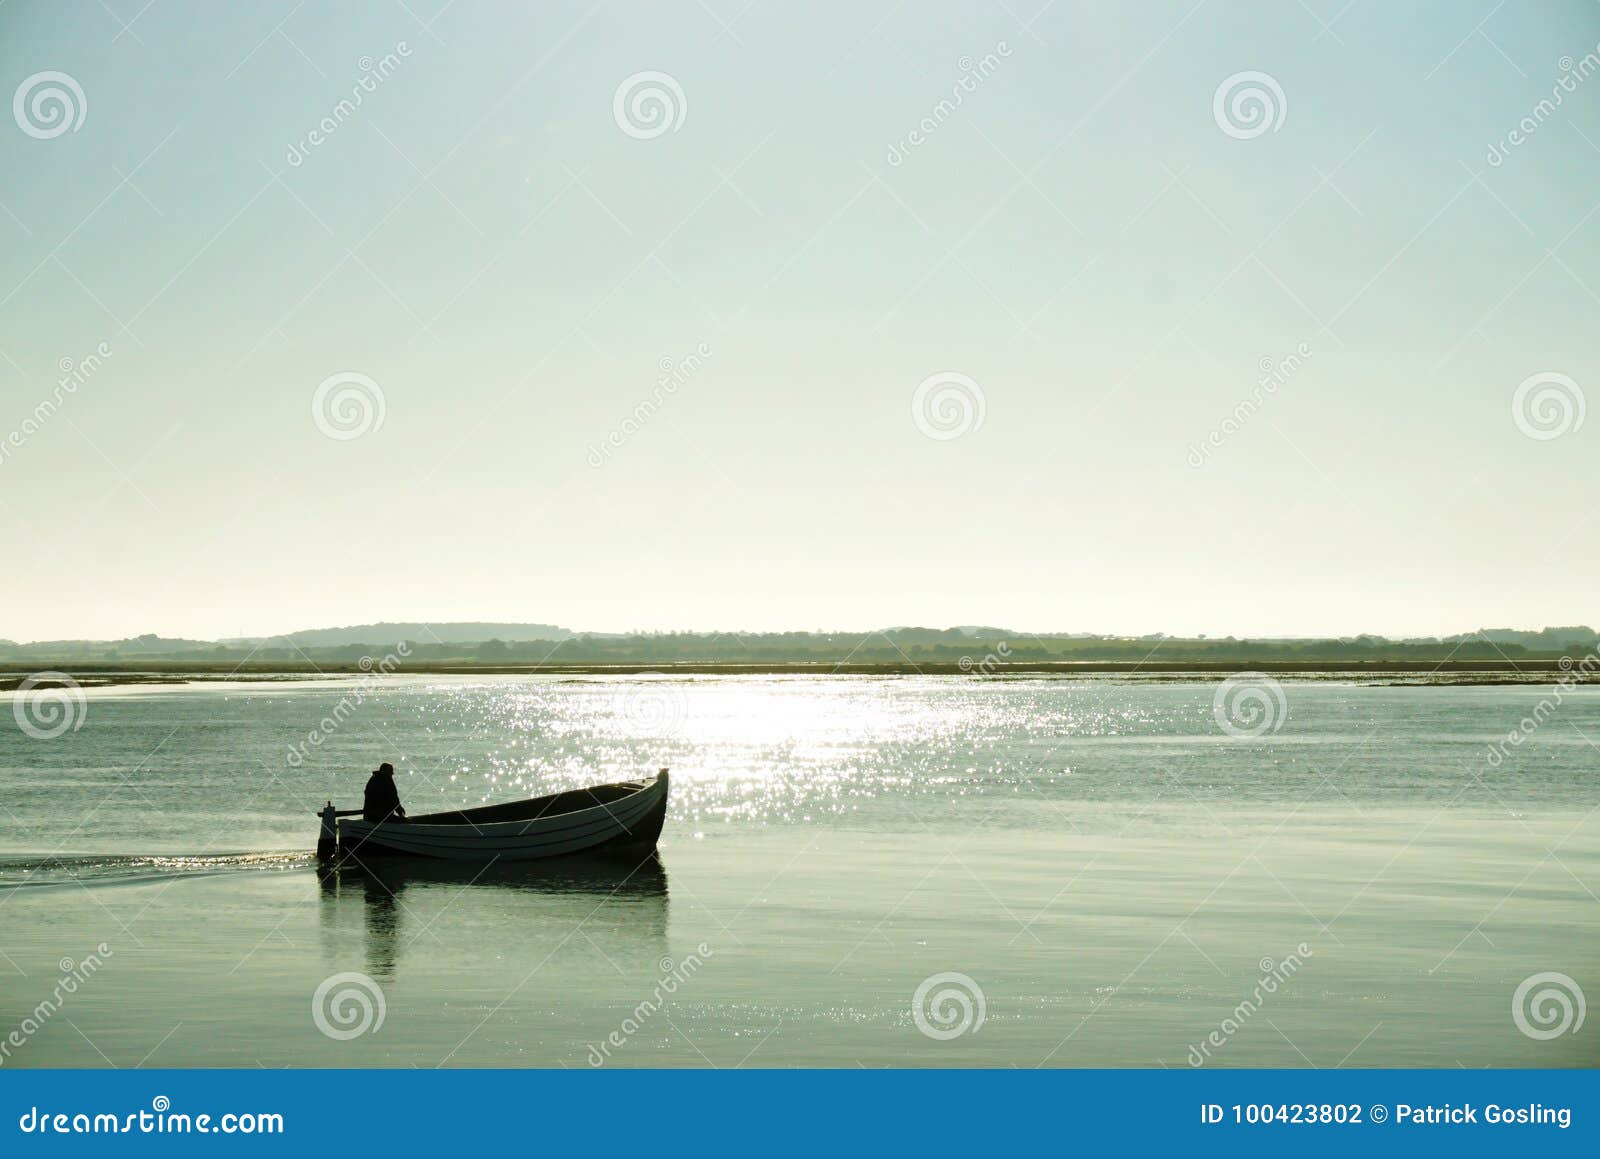 lone boatman